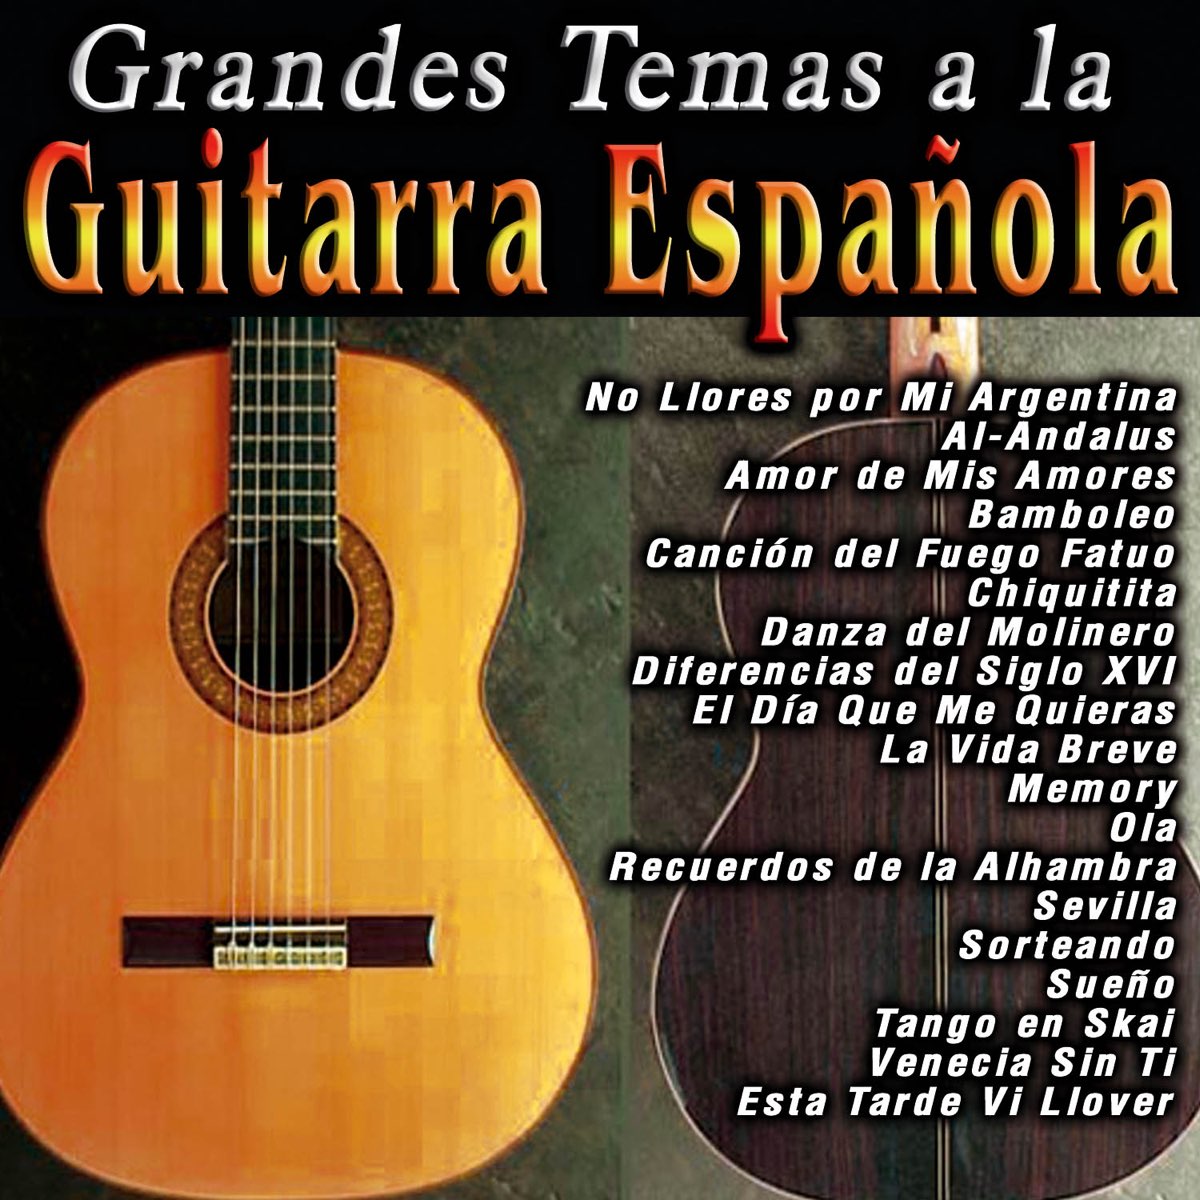 Grandes Temas a la Guitarra Española by Sergi Vicente on Apple Music